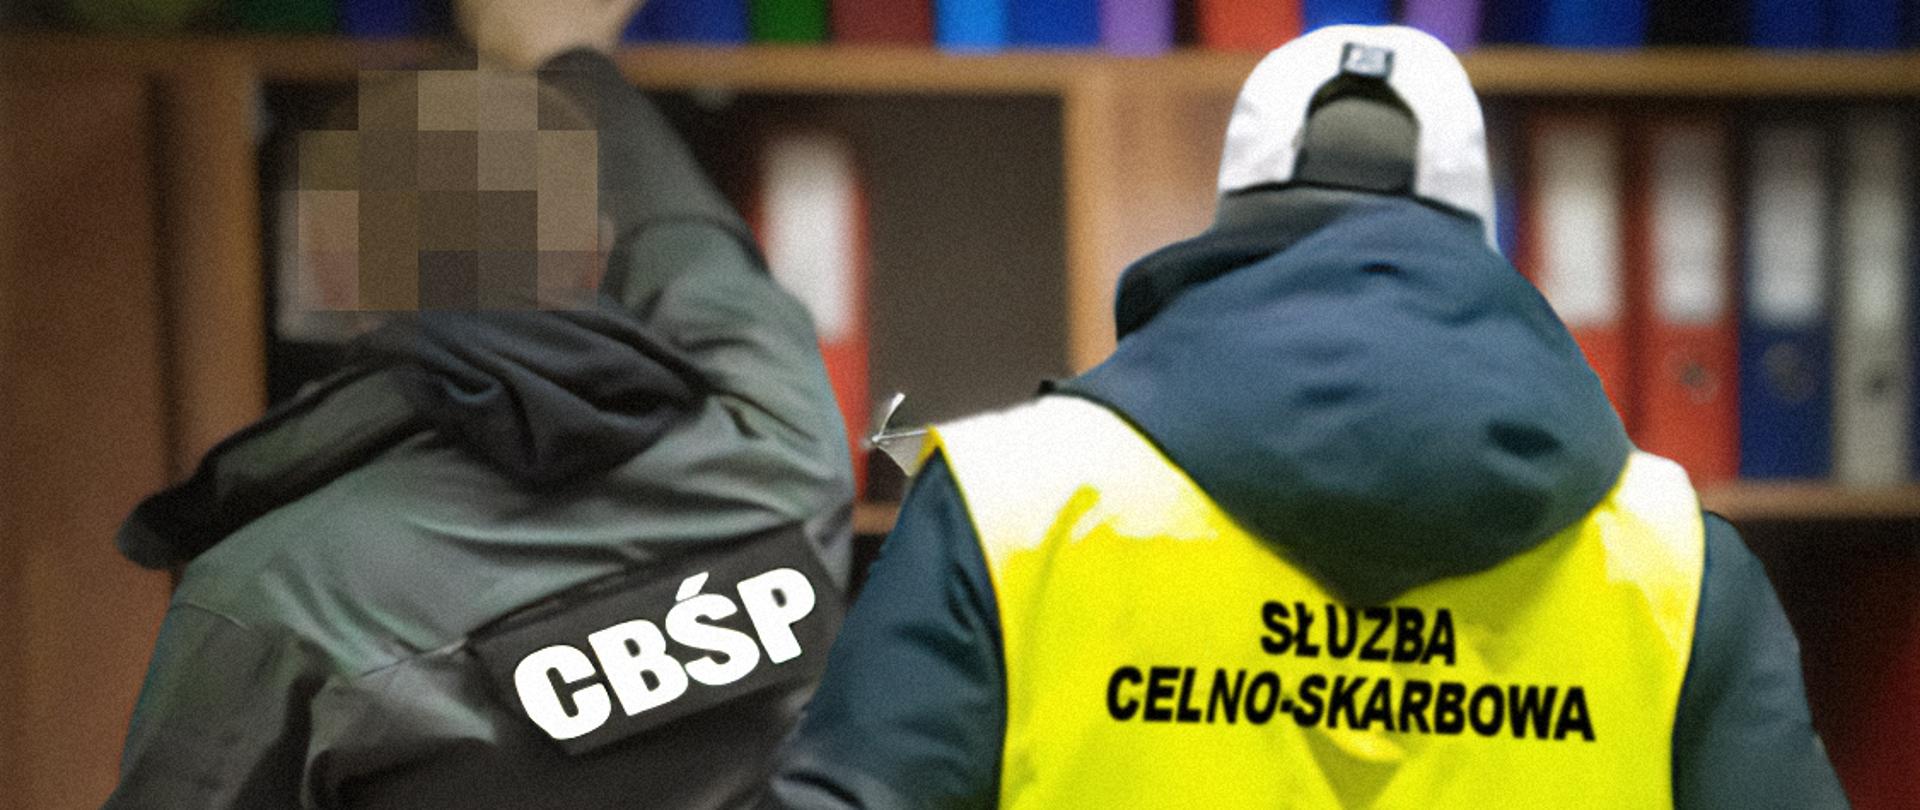 Na zdjęciu mężczyzna w kamizelce z napisem Służba Celno-Skarbowa oraz mężczyzna w kurtce z napisem CBŚP na tle regał z segregatorami.